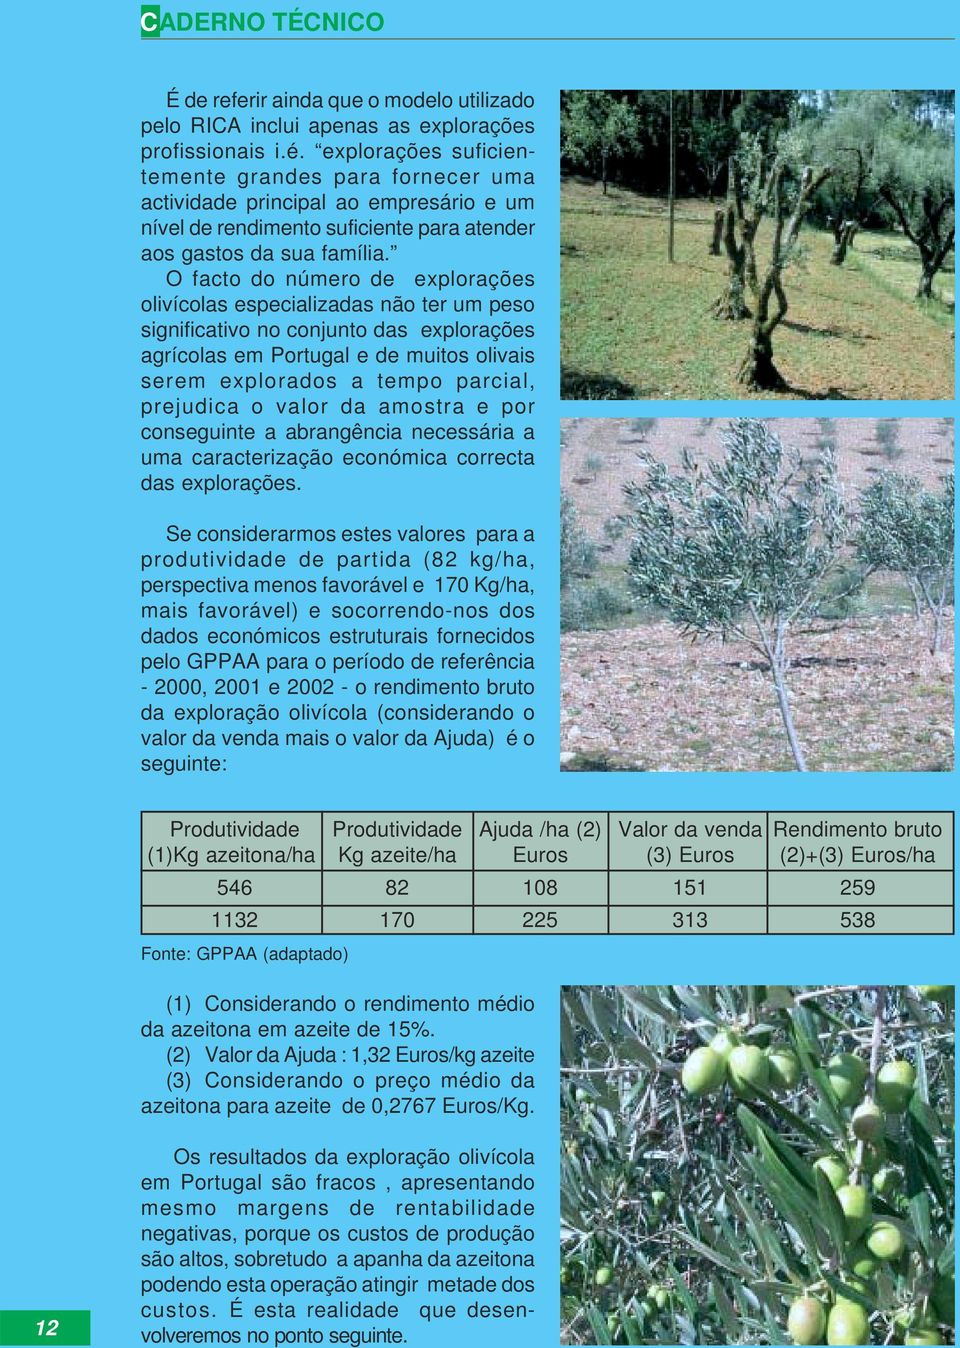 O facto do número de explorações olivícolas especializadas não ter um peso significativo no conjunto das explorações agrícolas em Portugal e de muitos olivais serem explorados a tempo parcial,